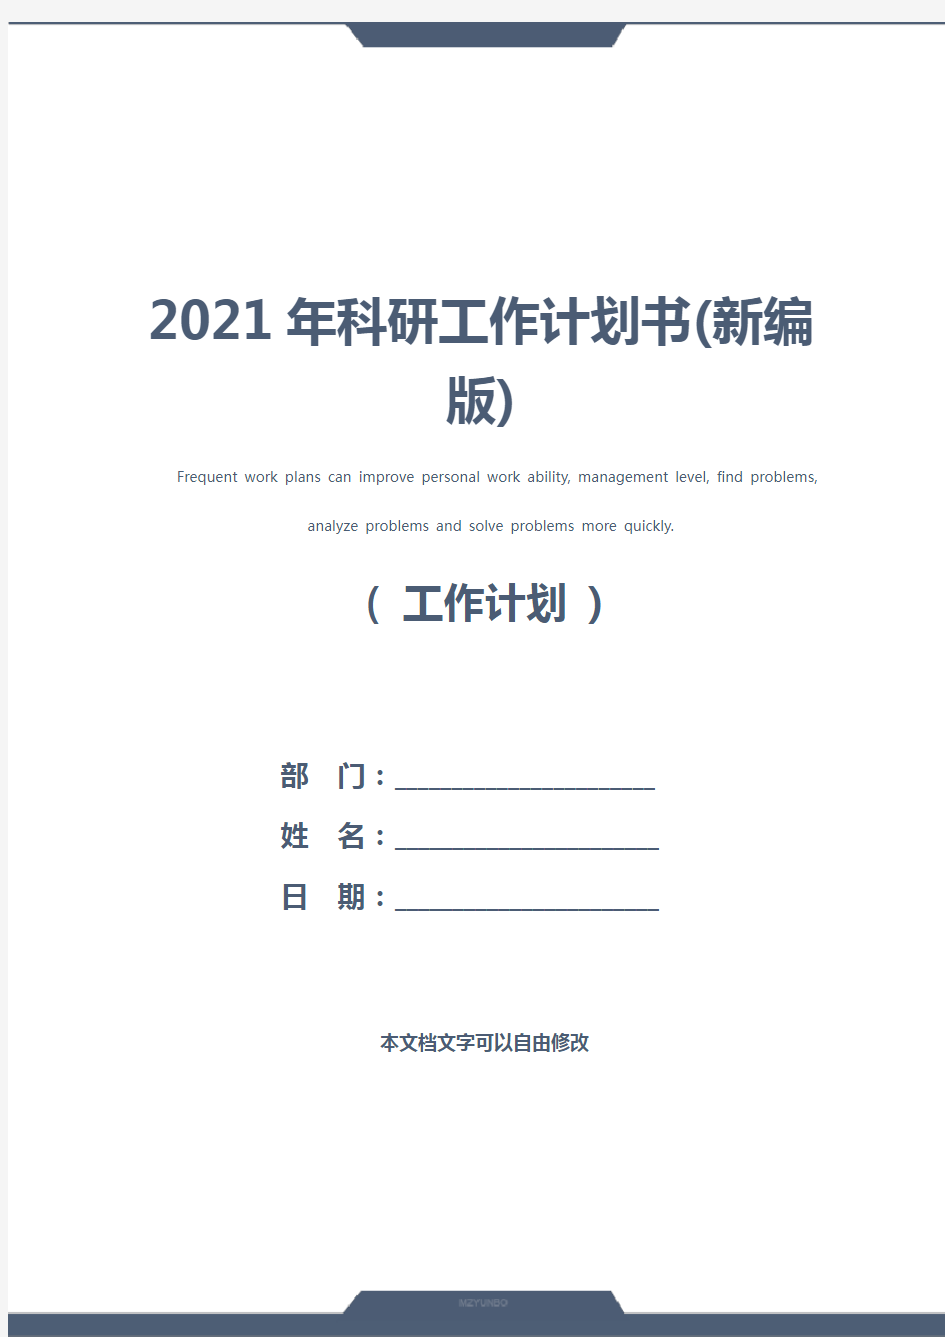 2021年科研工作计划书(新编版)